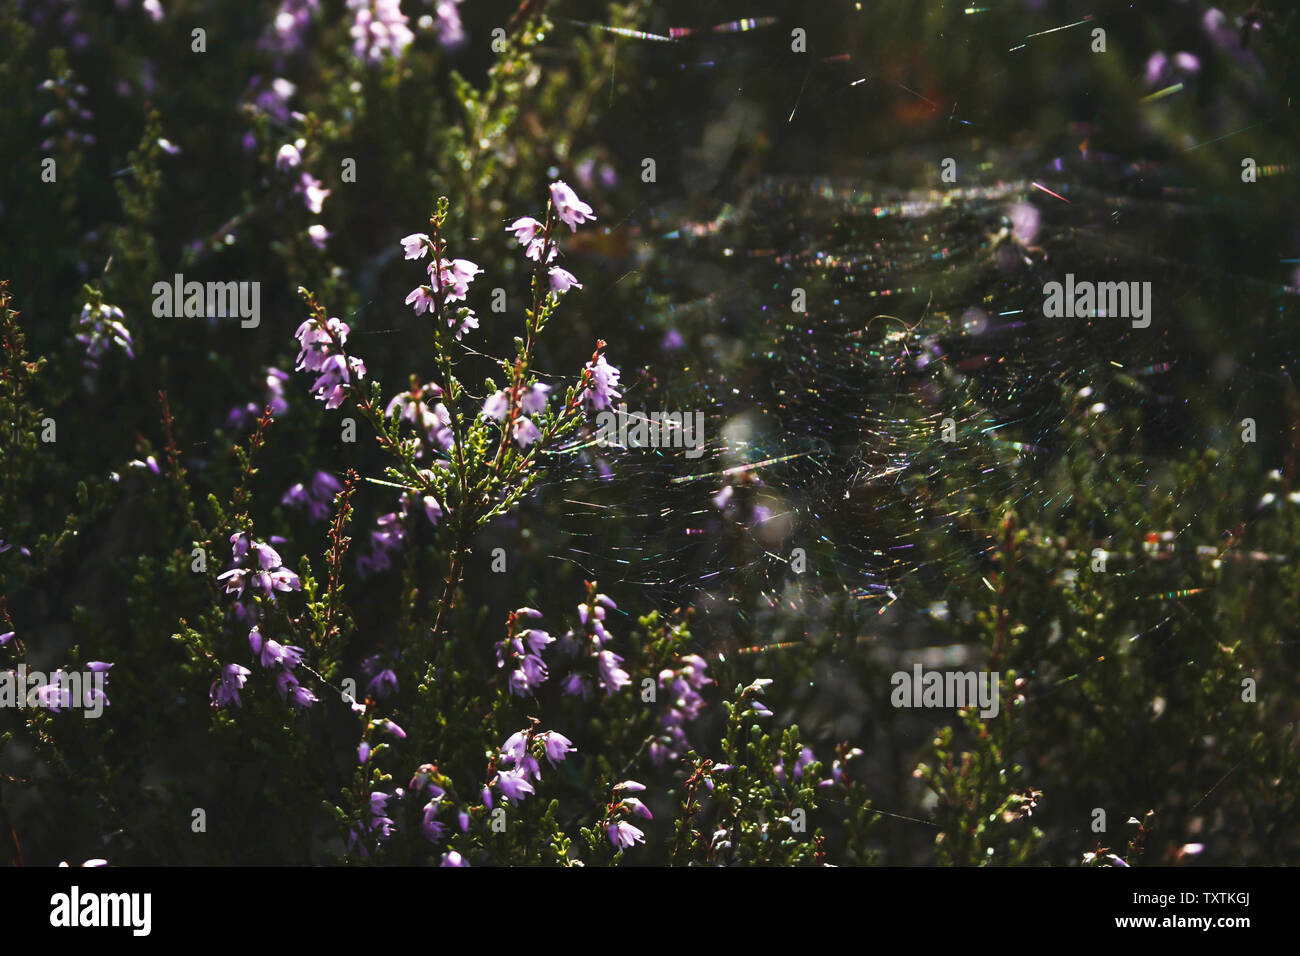 Una tela de araña en un purple heather bush iluminado por los rayos del sol. Cenas bog en Letonia. Foto de stock